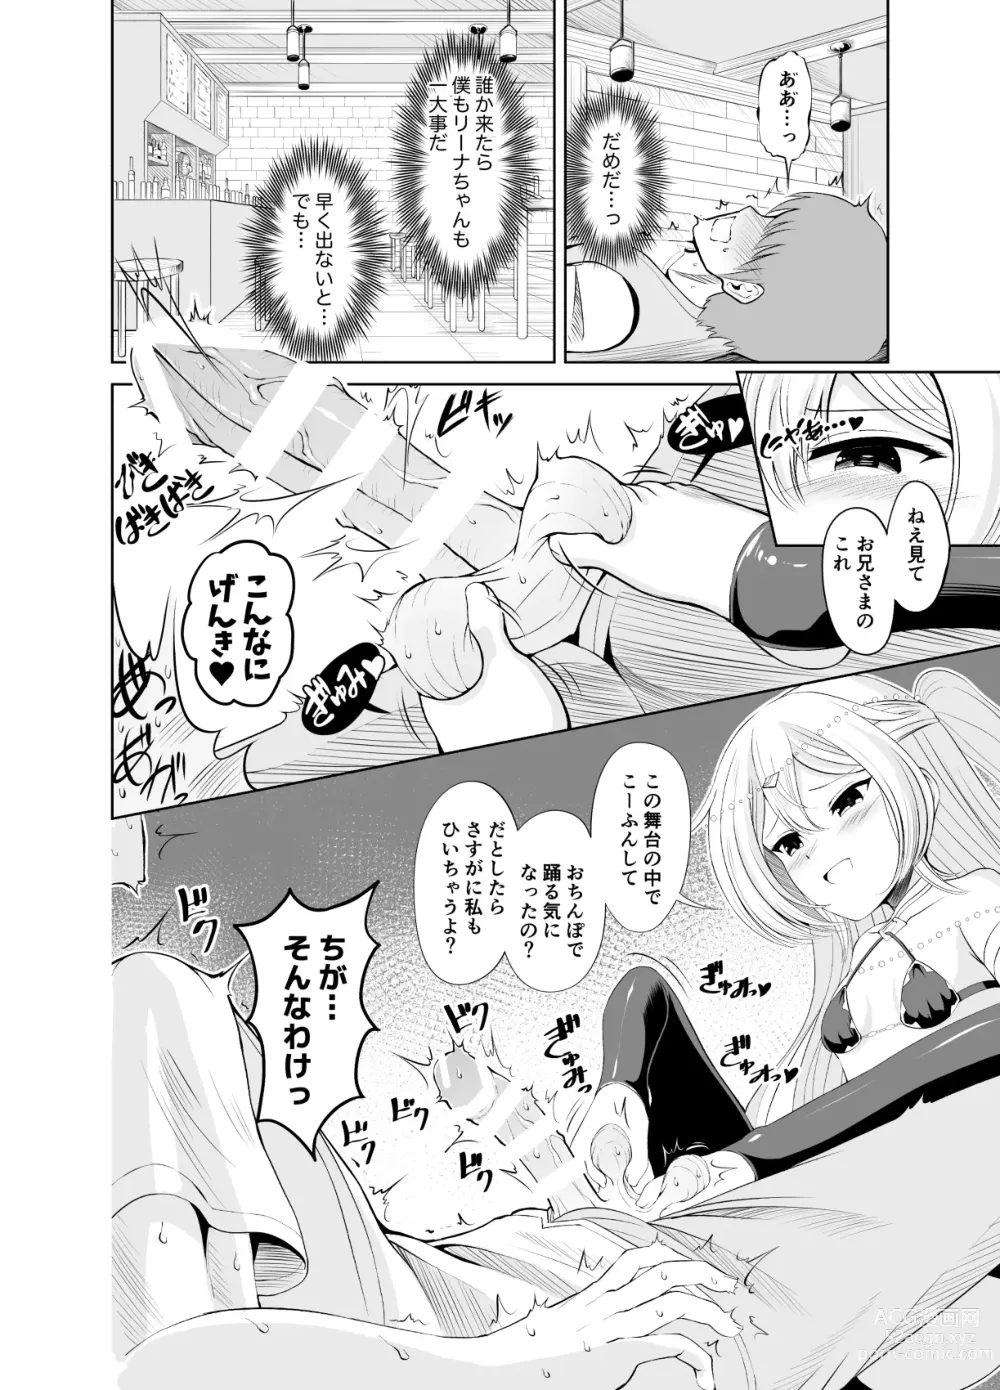 Page 2 of doujinshi Ama Zeme ~Saioshi no Koakuma Imouto-kei Odoriko ni Omocha ni Sareru Hibi no Hitomaku~